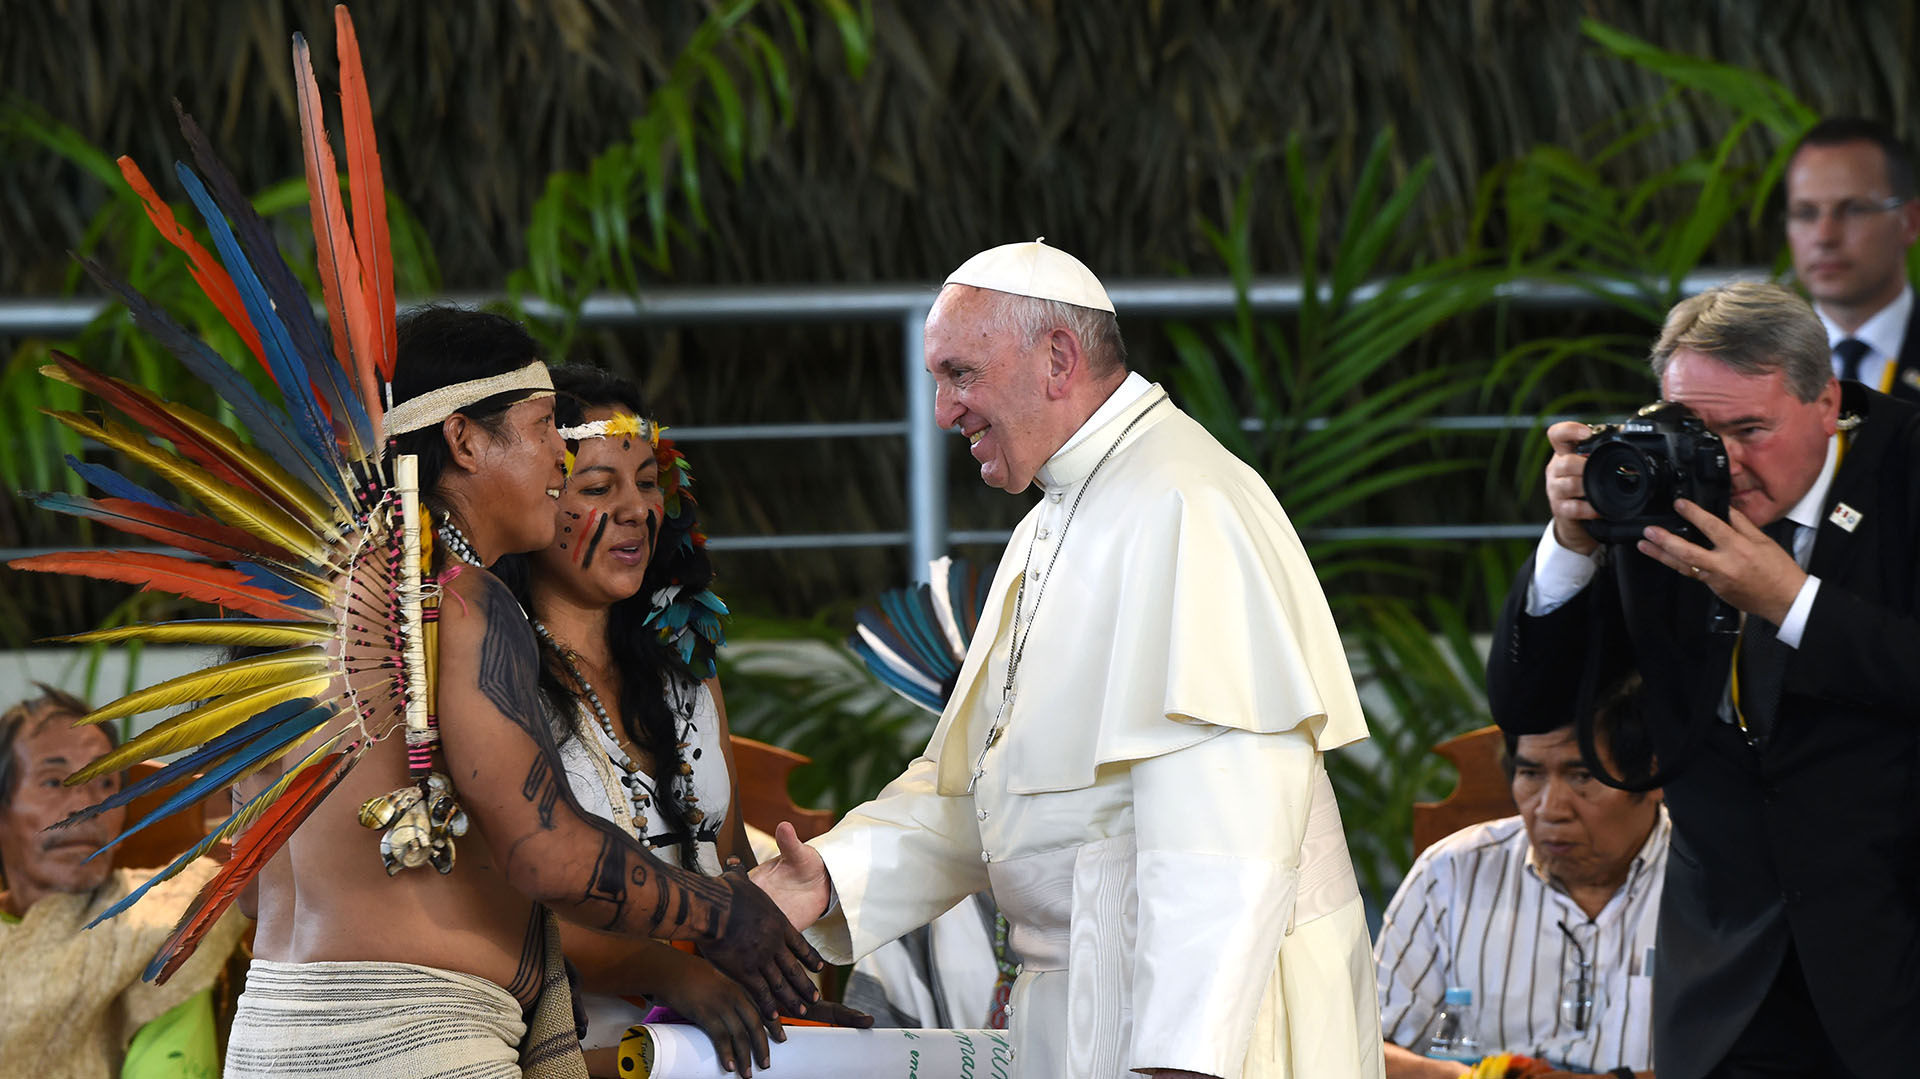 El Vaticano repudió la doctrina colonial del descubrimiento que legitimó la apropiación de tierras indígenas en América